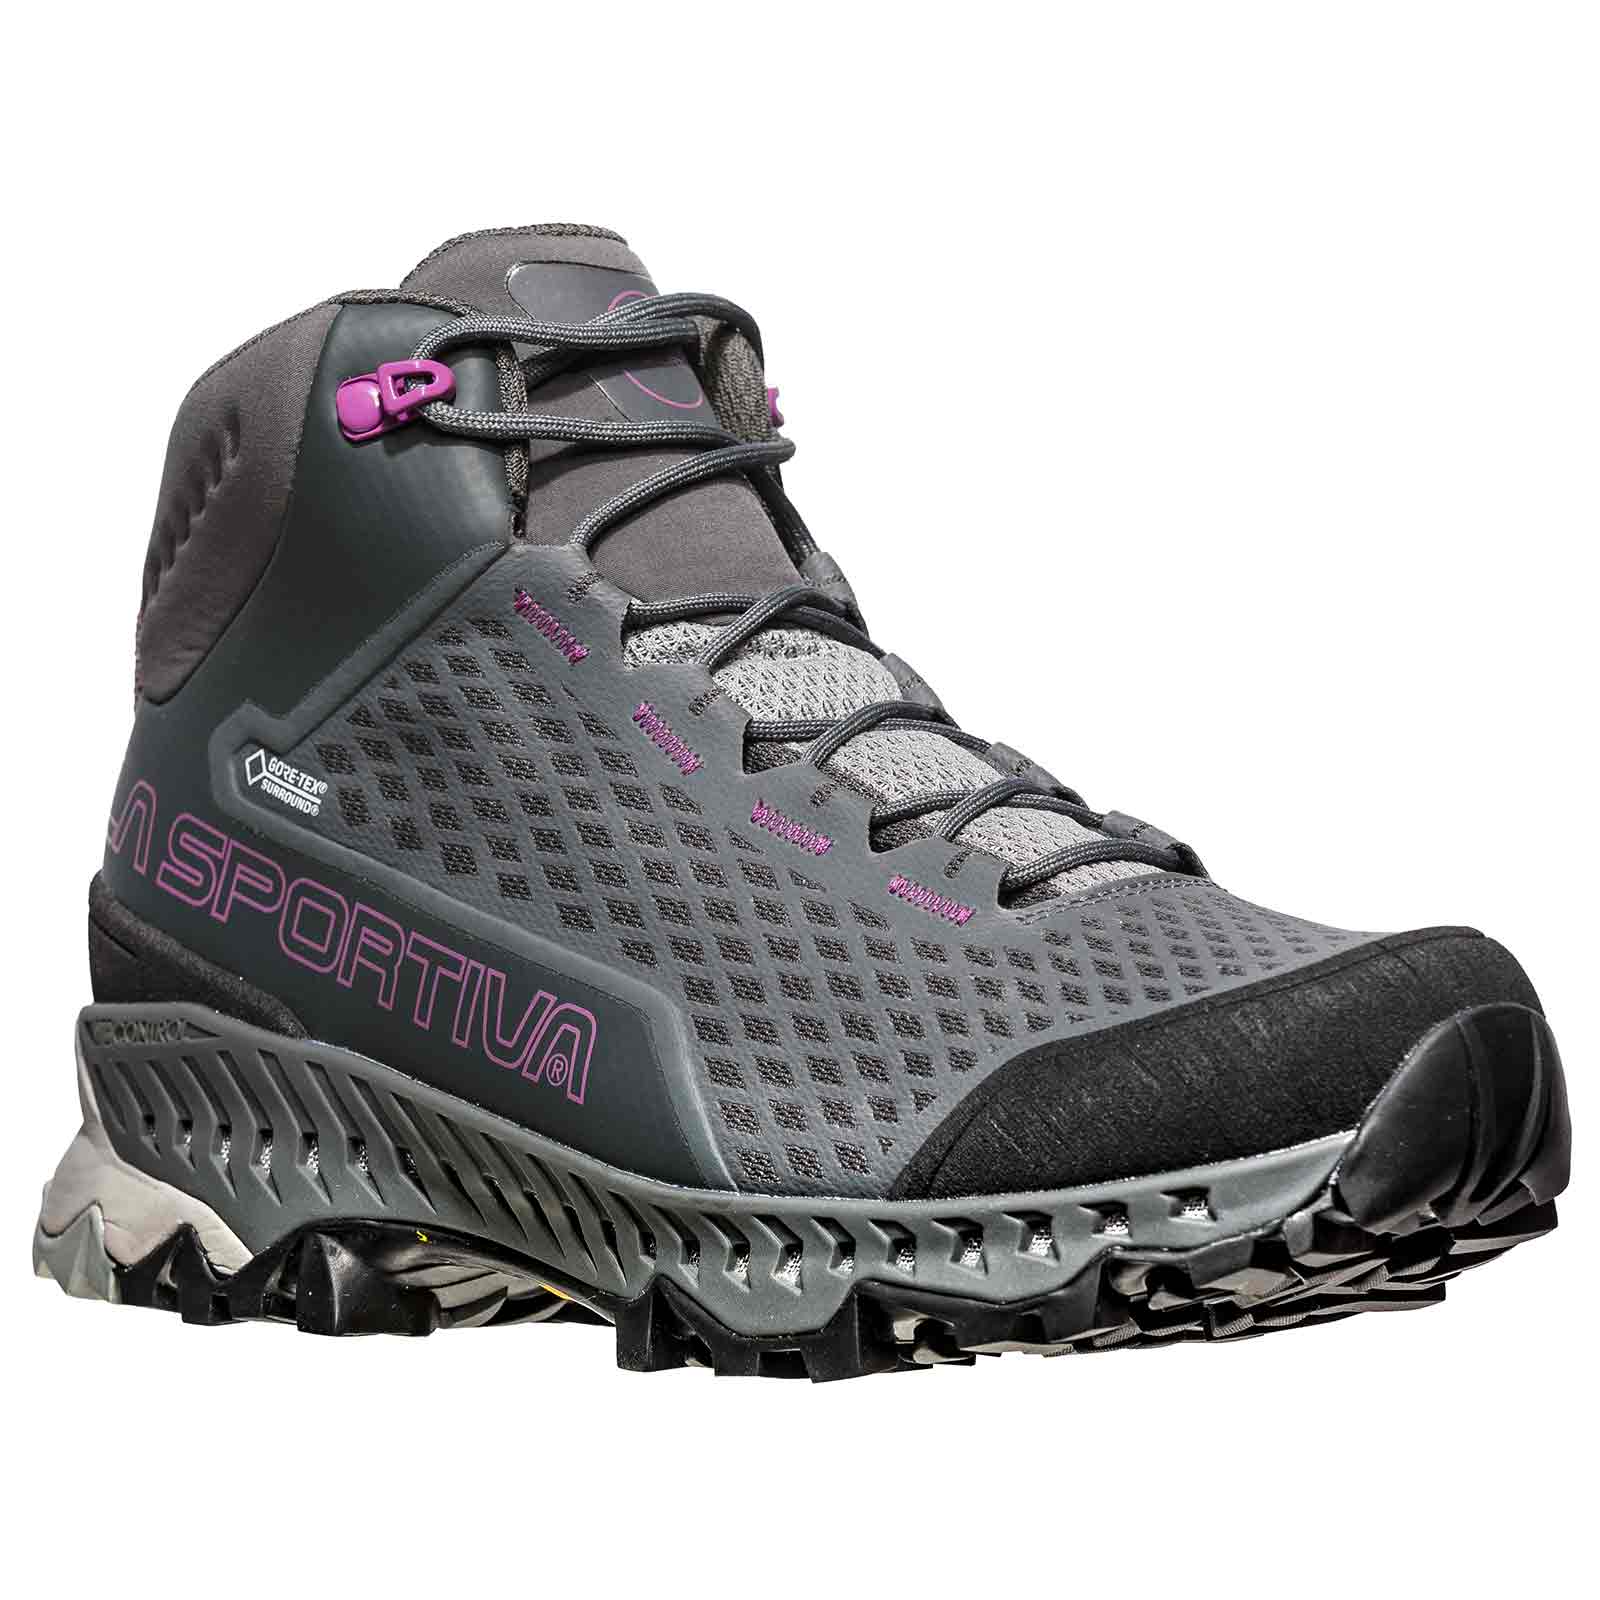 la sportiva women's hiking footwear